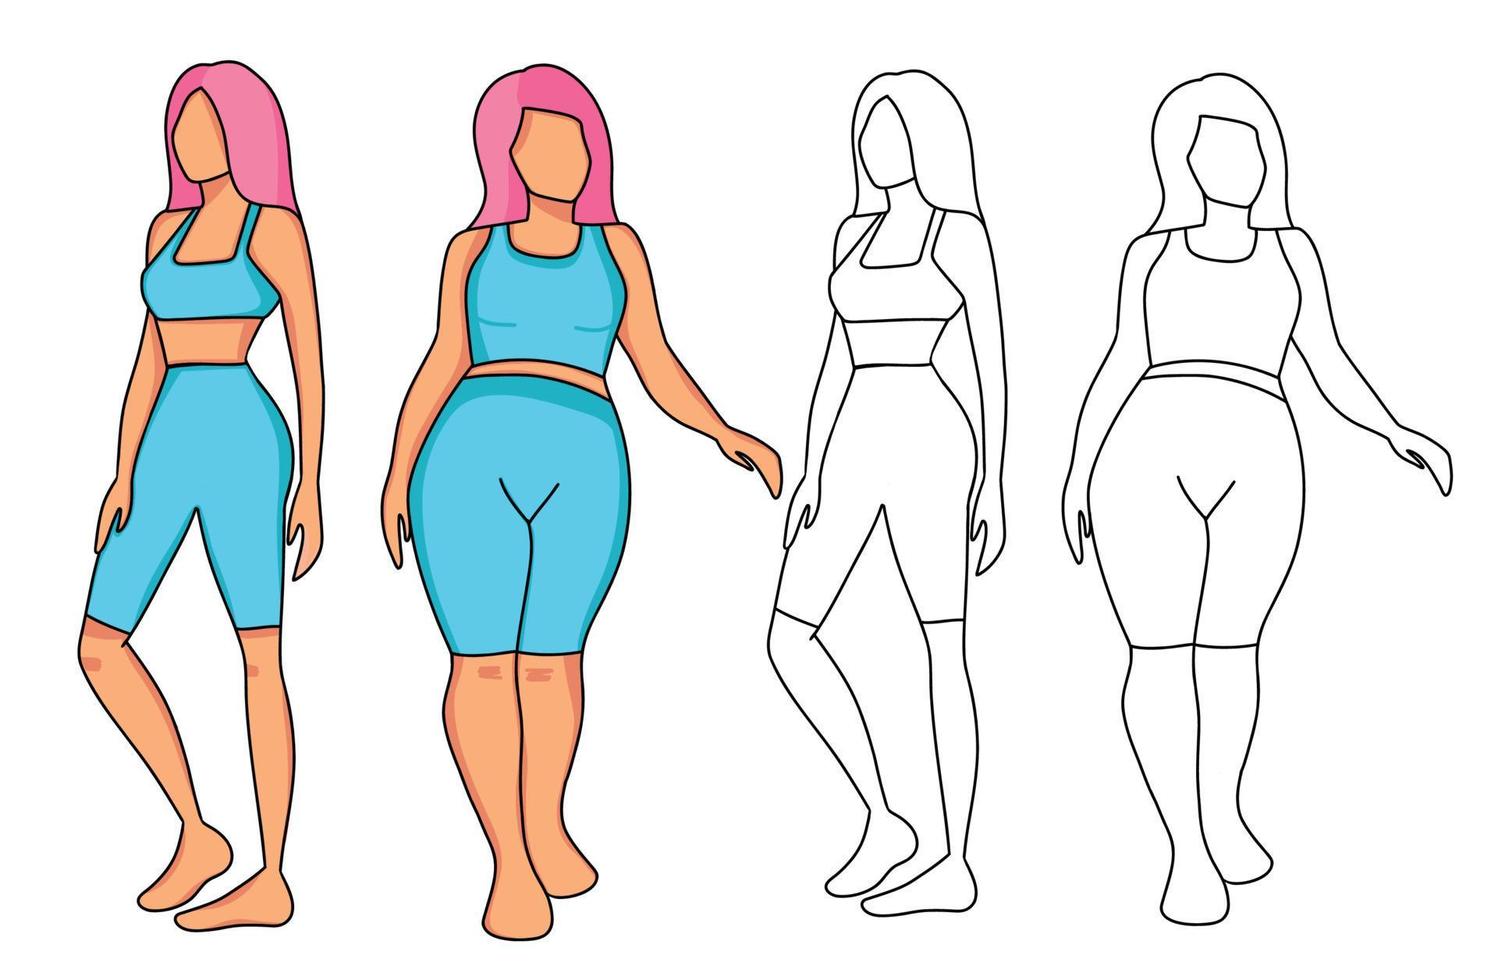 twee meisjes van verschillend figuur slank en lichaam positief twee keer bekeken zwart schets en kleur illustratie vector